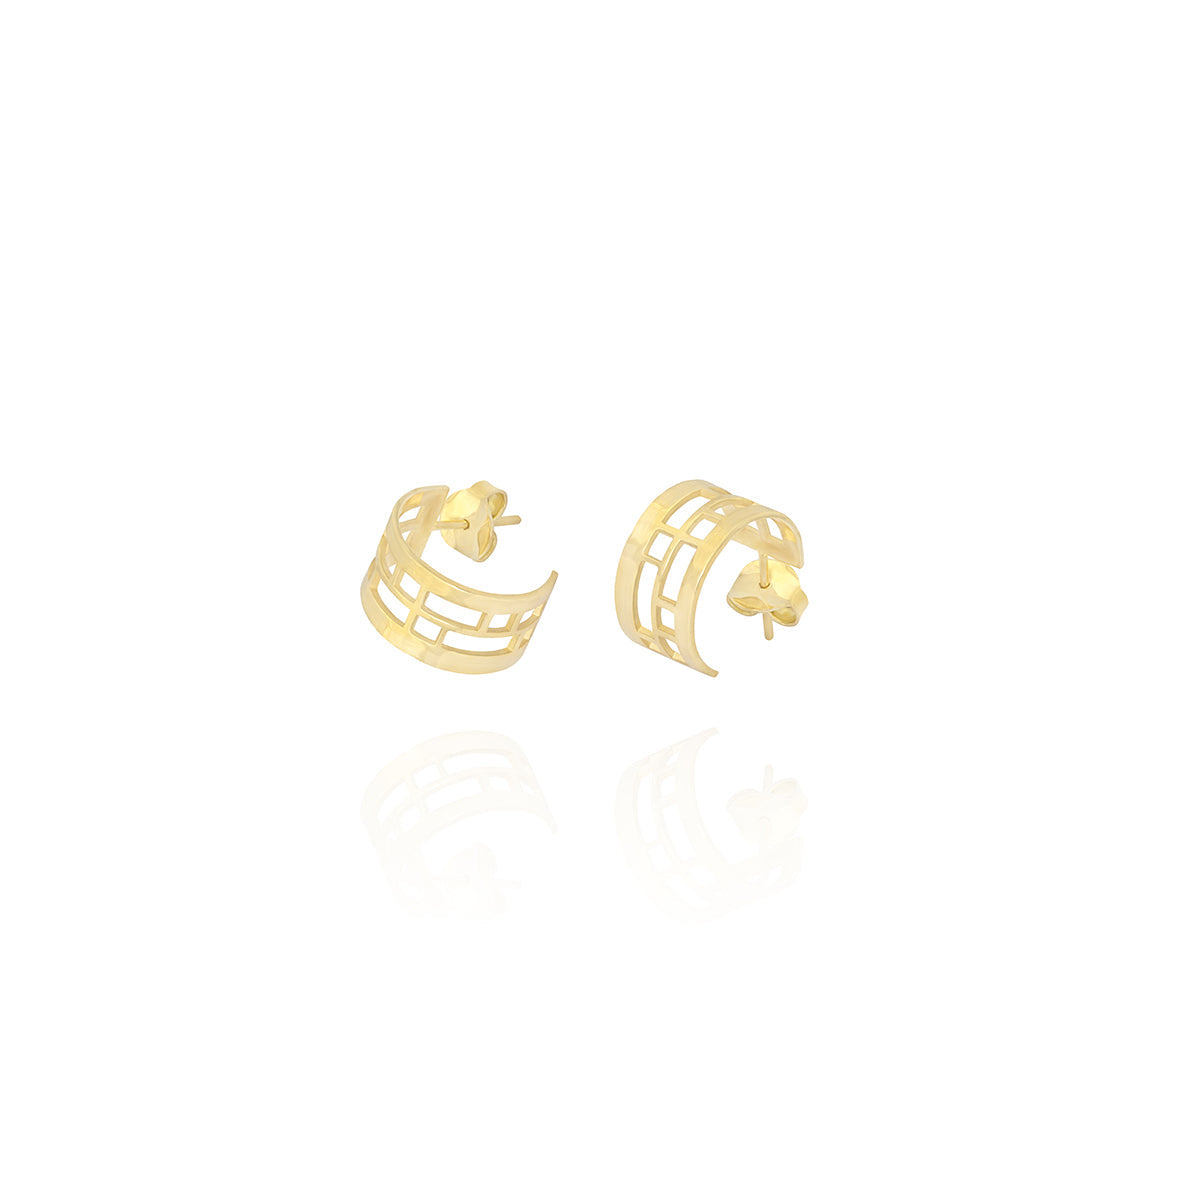 Mini Hoop Earrings in 18k Yellow gold